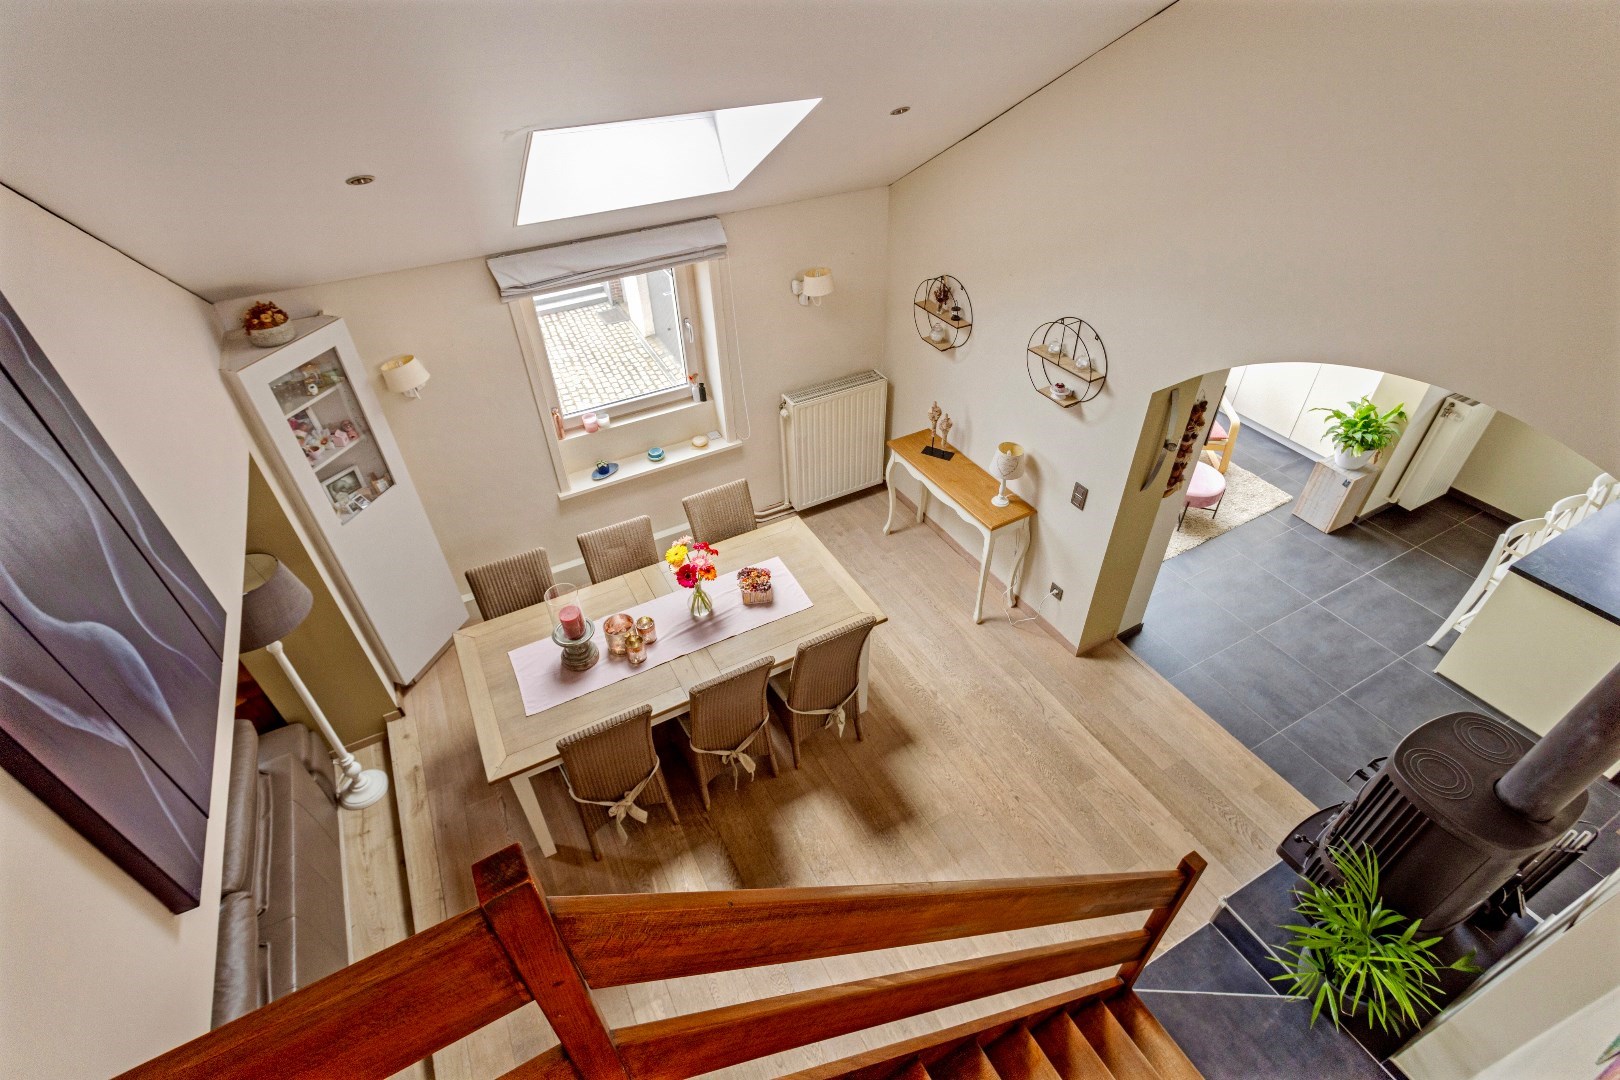 Maison a vendre | option - sous réserve À Sint-Pieters-Leeuw